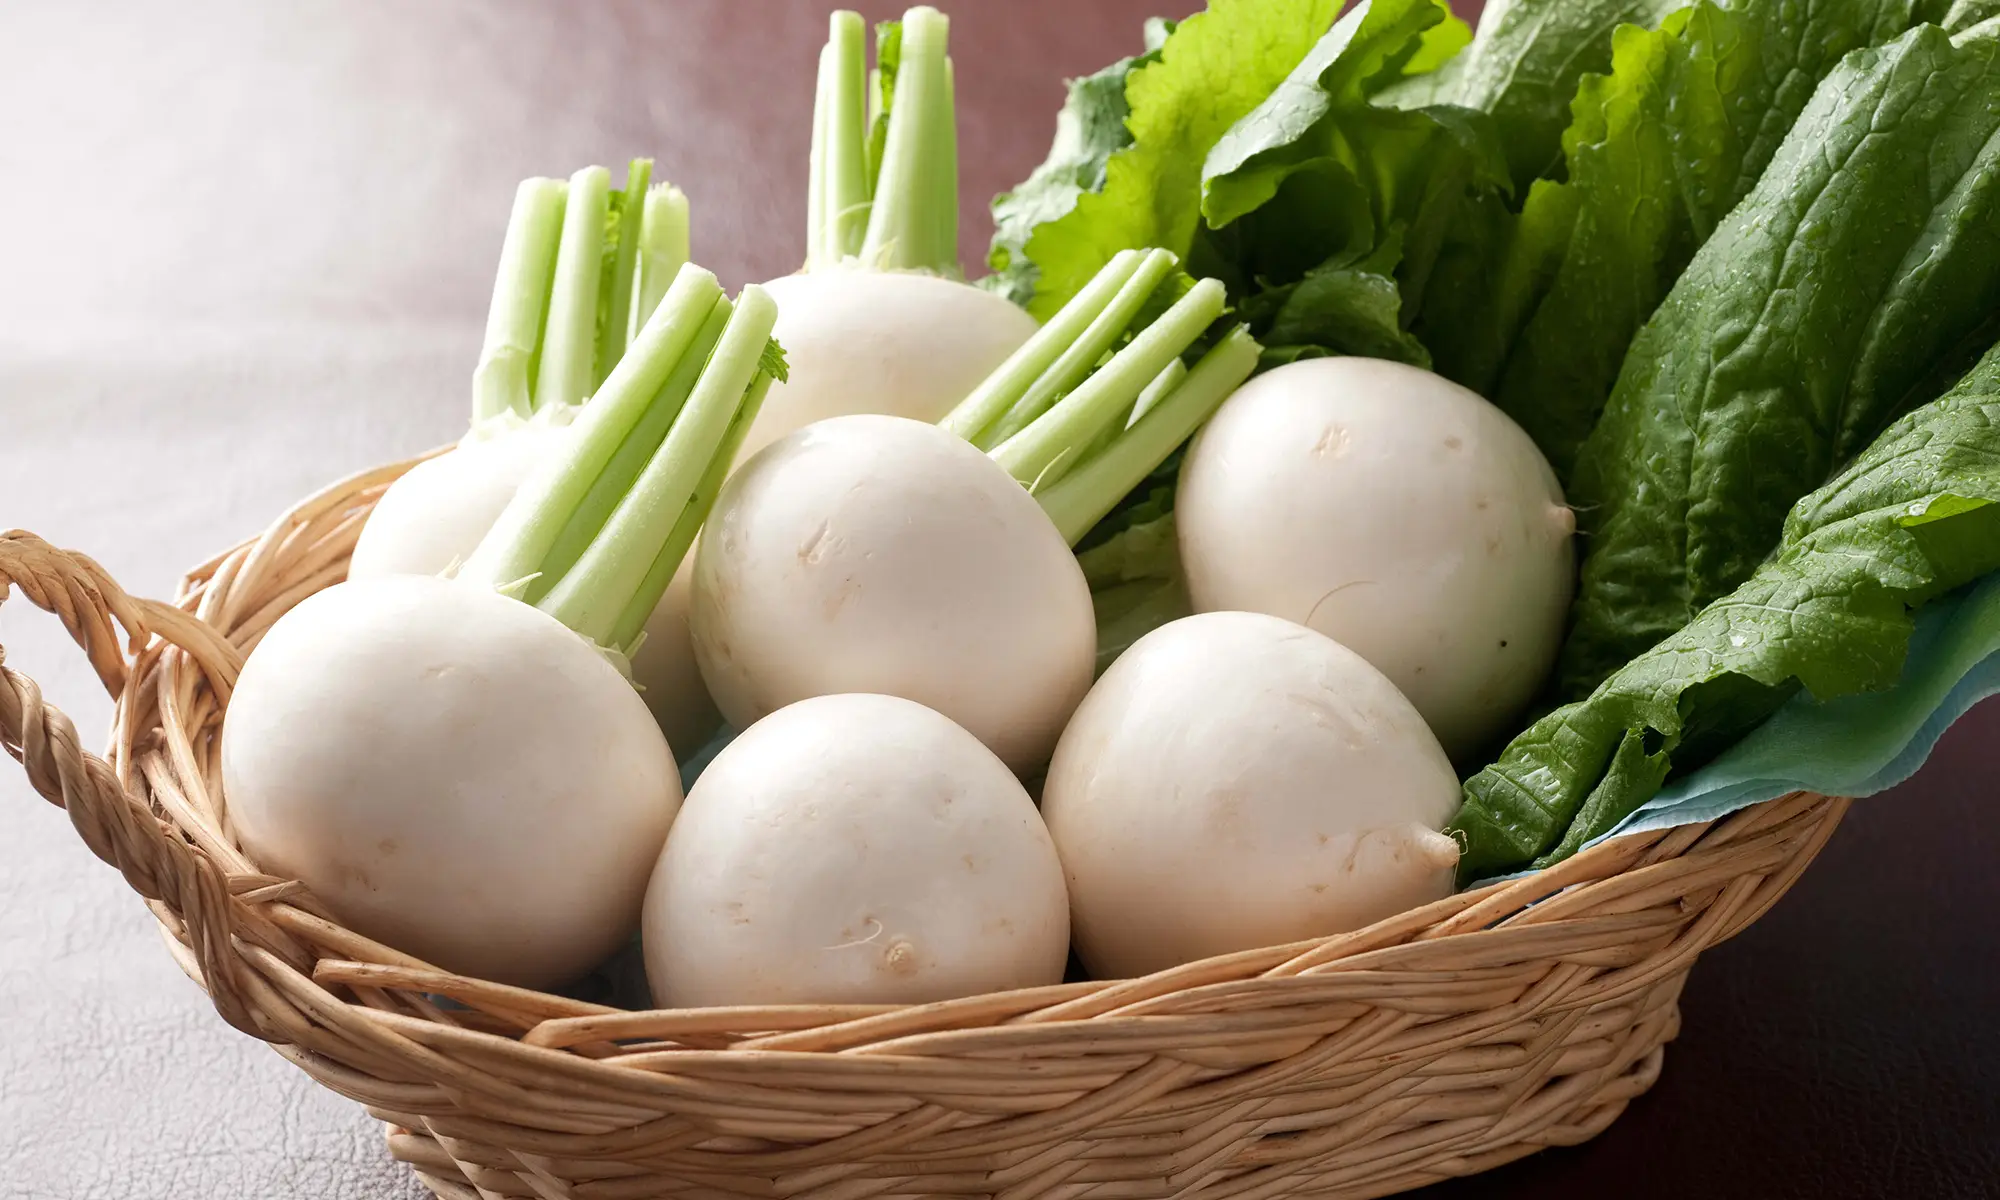 Advantages of freezing turnips